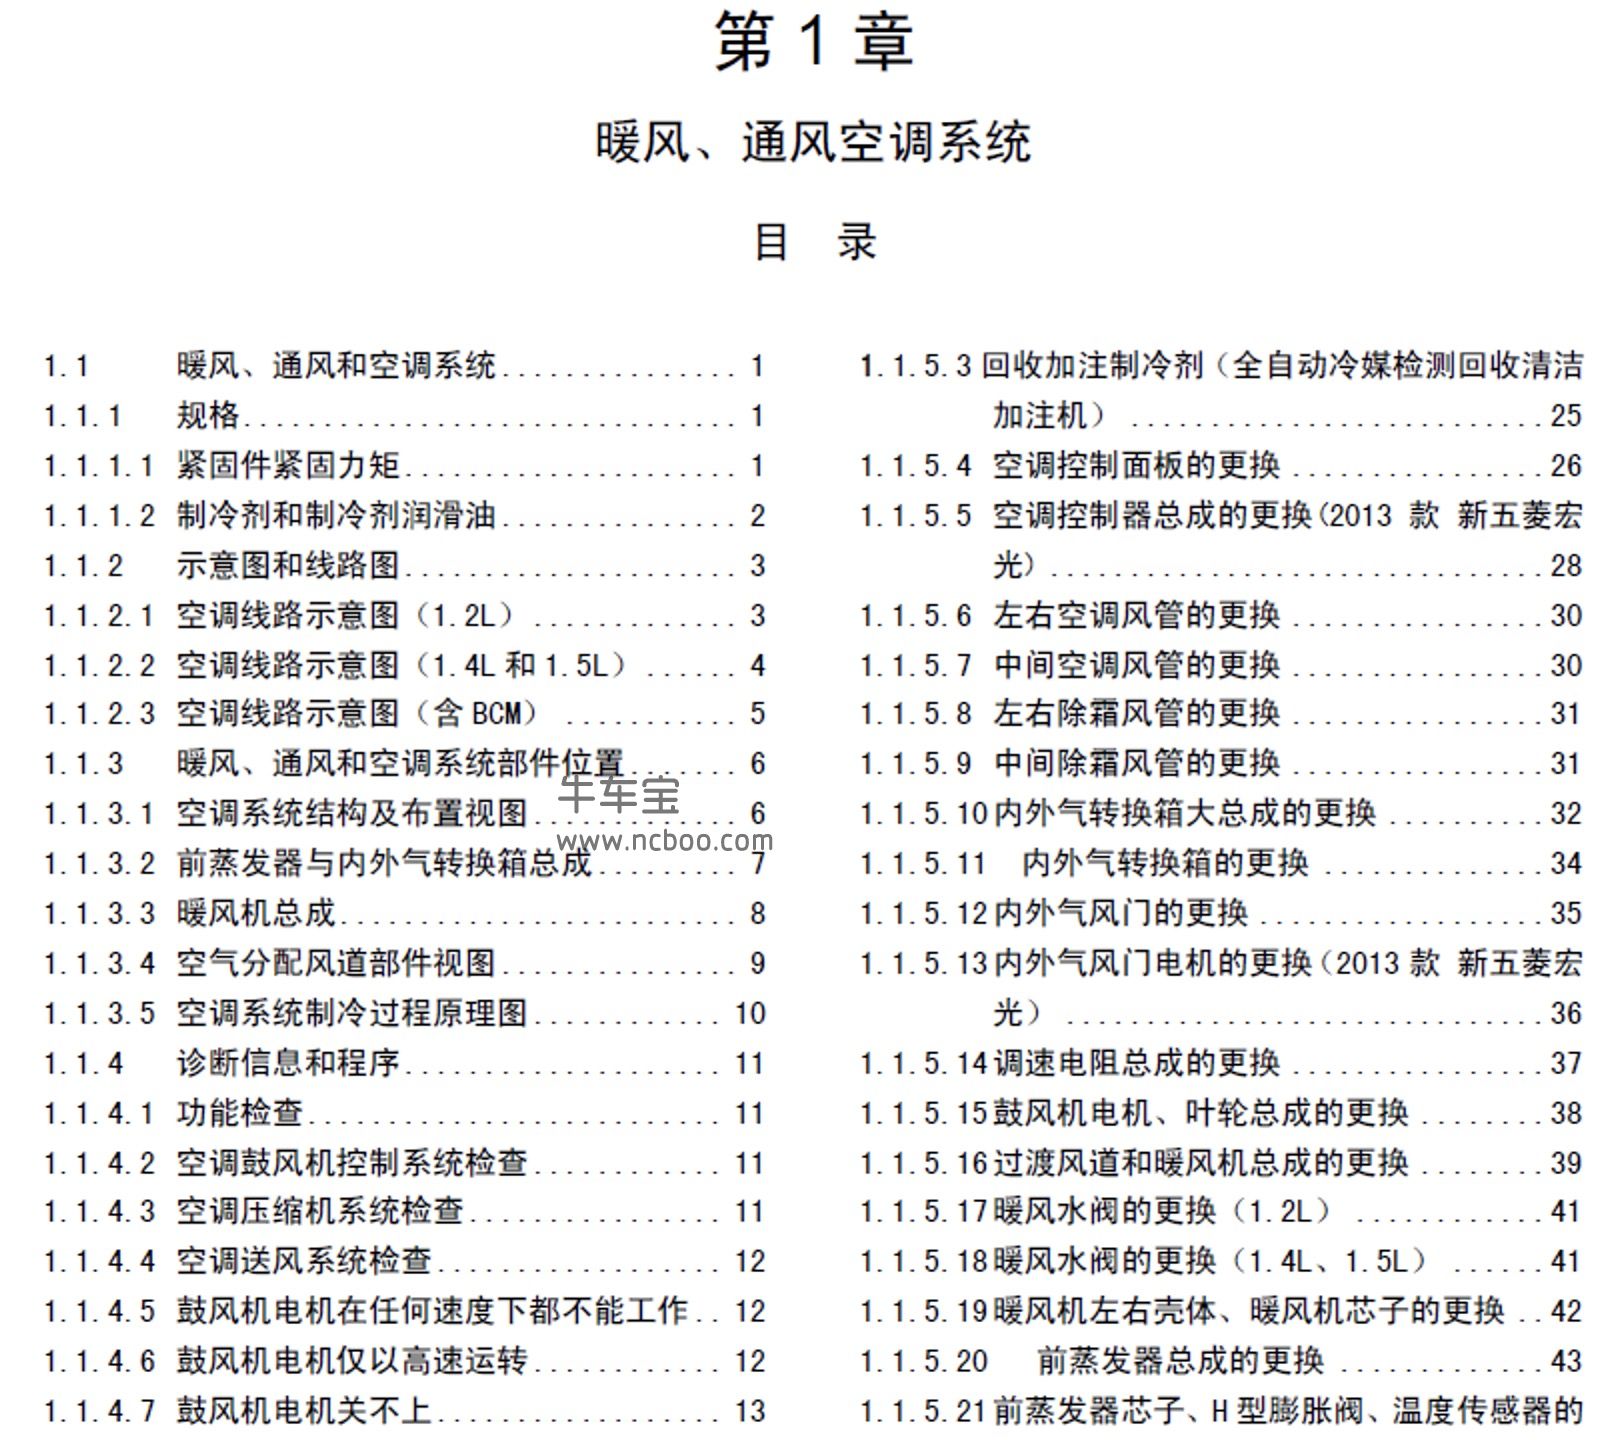 2013-2014款五菱宏光(CN100)原厂维修手册及电路图下载